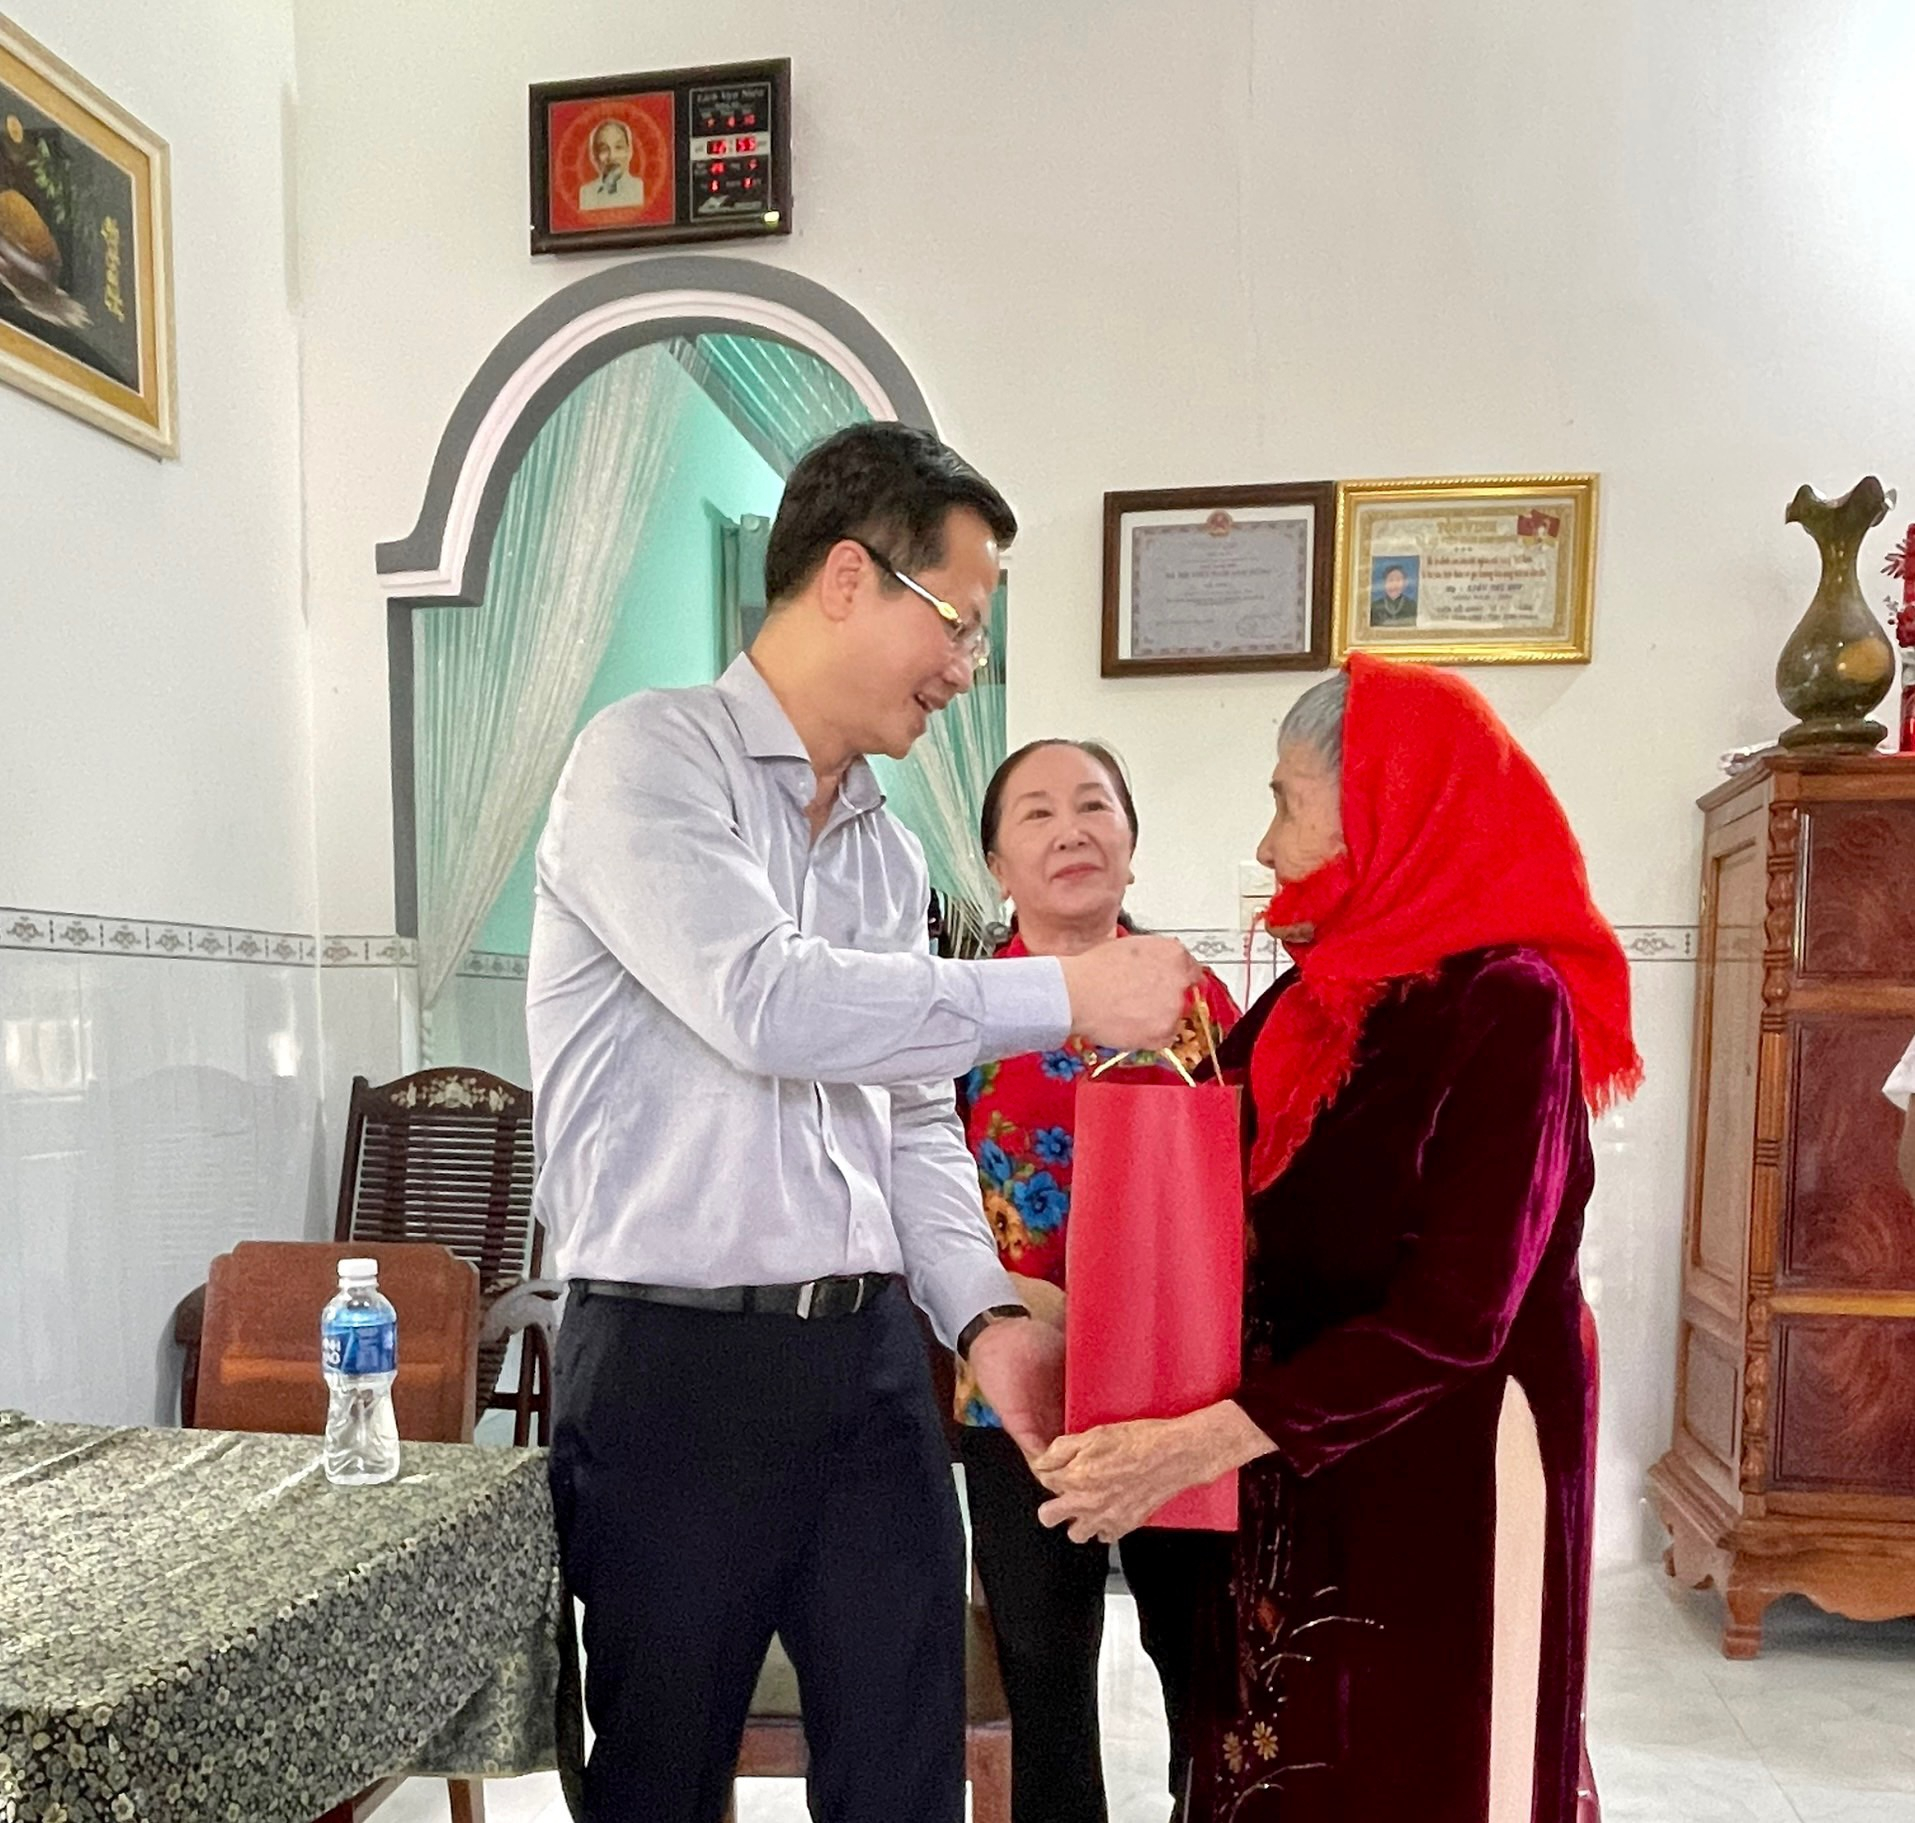 Nhân chuyến công tác tại huyện Tánh Linh, đồng chí phó bí thư, chủ tịch UBND tỉnh Đoàn Anh Dũng đã ghé thăm và tặng quà cho bà mẹ Việt Nam anh hùng trên địa bàn huyện